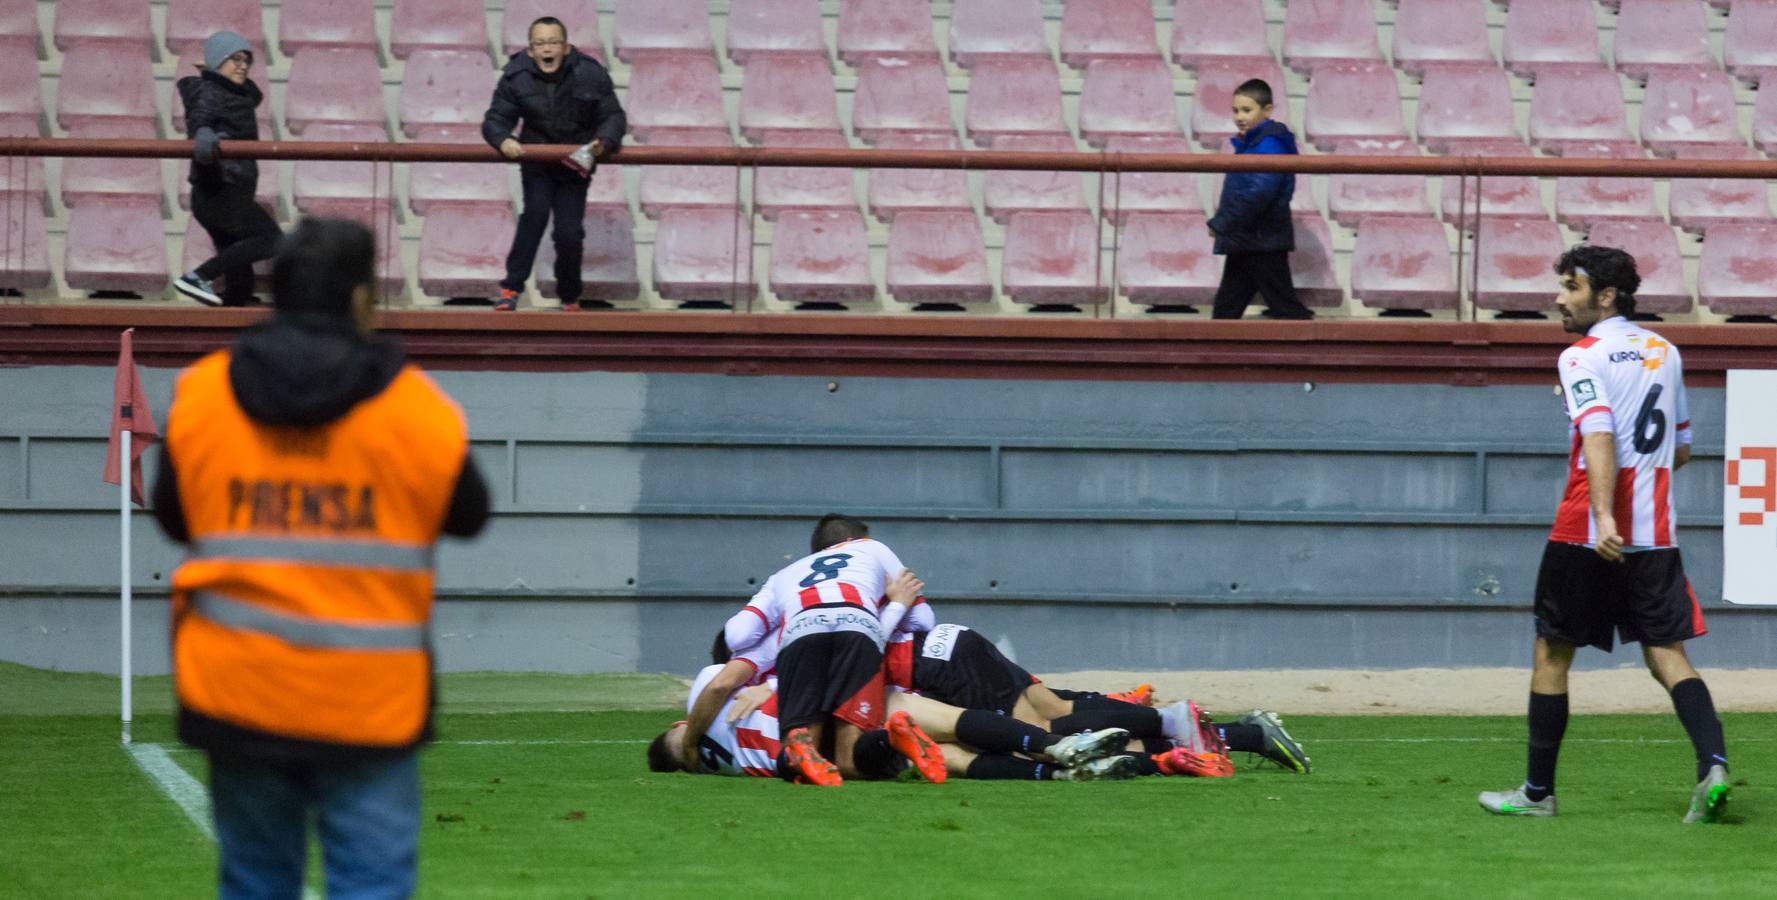 La UD Logroñés ha logrado una gran victoria ante el Racing por 2-1